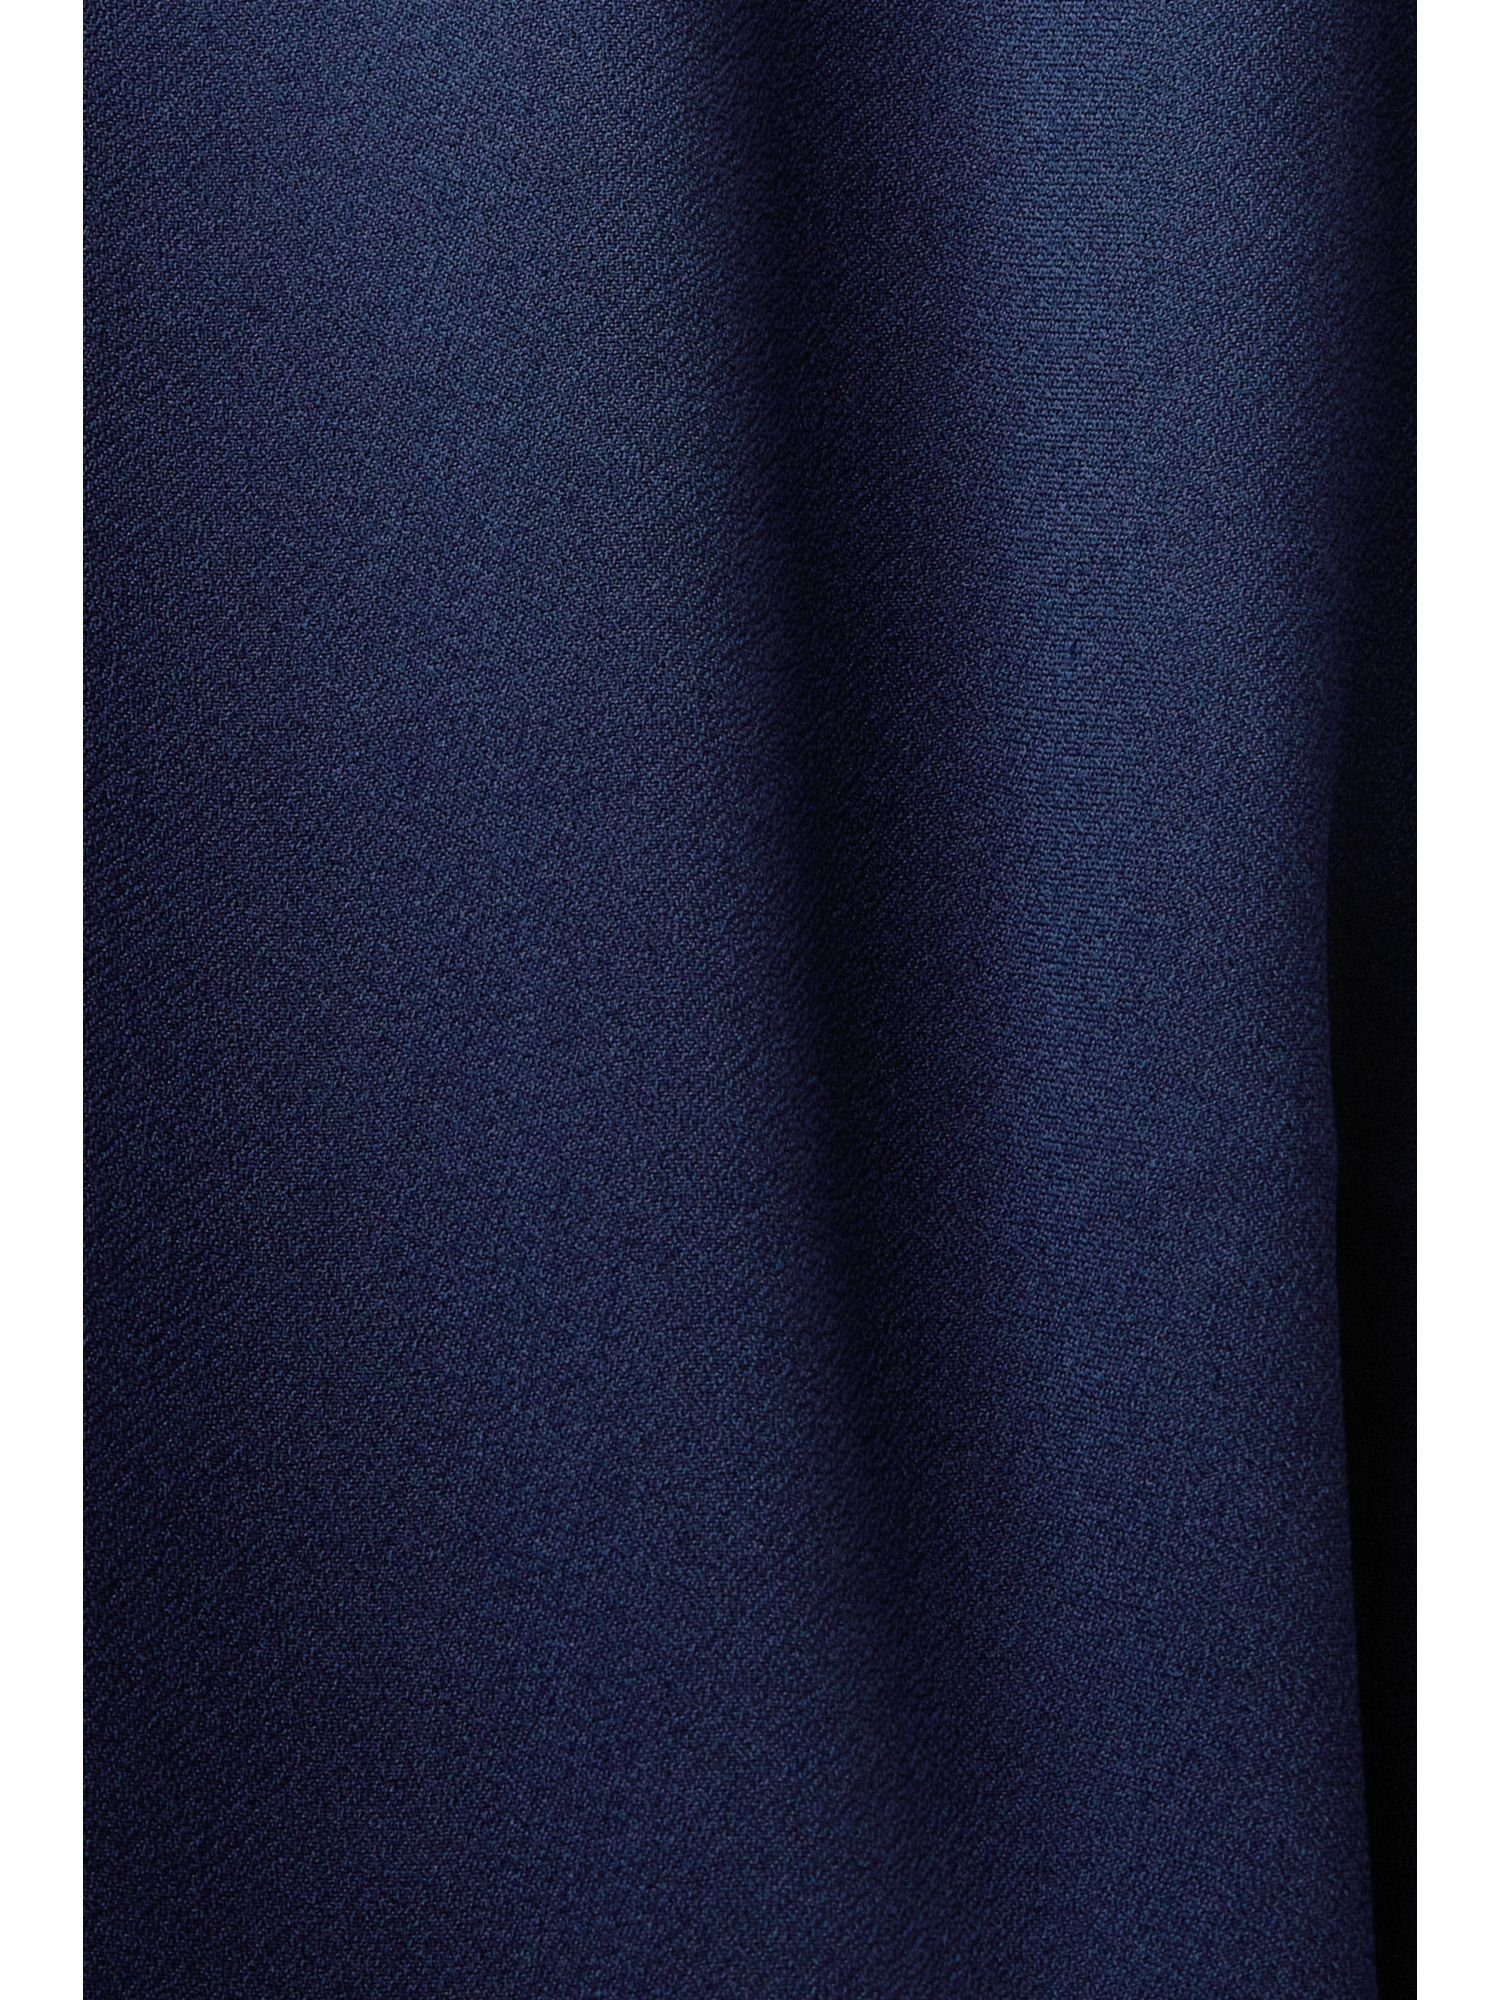 Esprit Collection BLUE Midikleid Laser-Cut-Details DARK Crêpe-Kleid mit